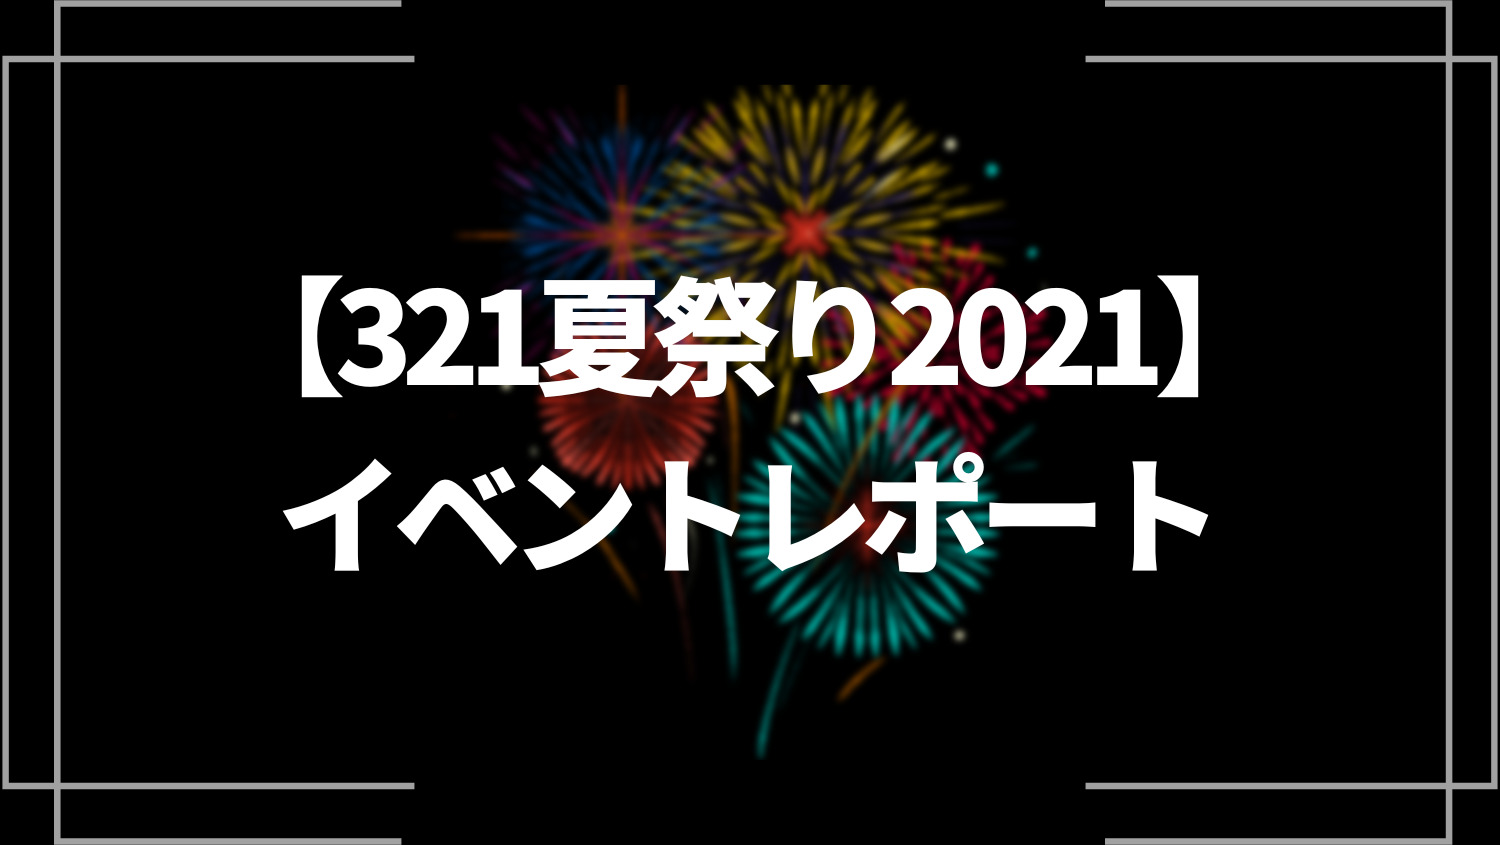 【321夏祭り2021】イベントレポート